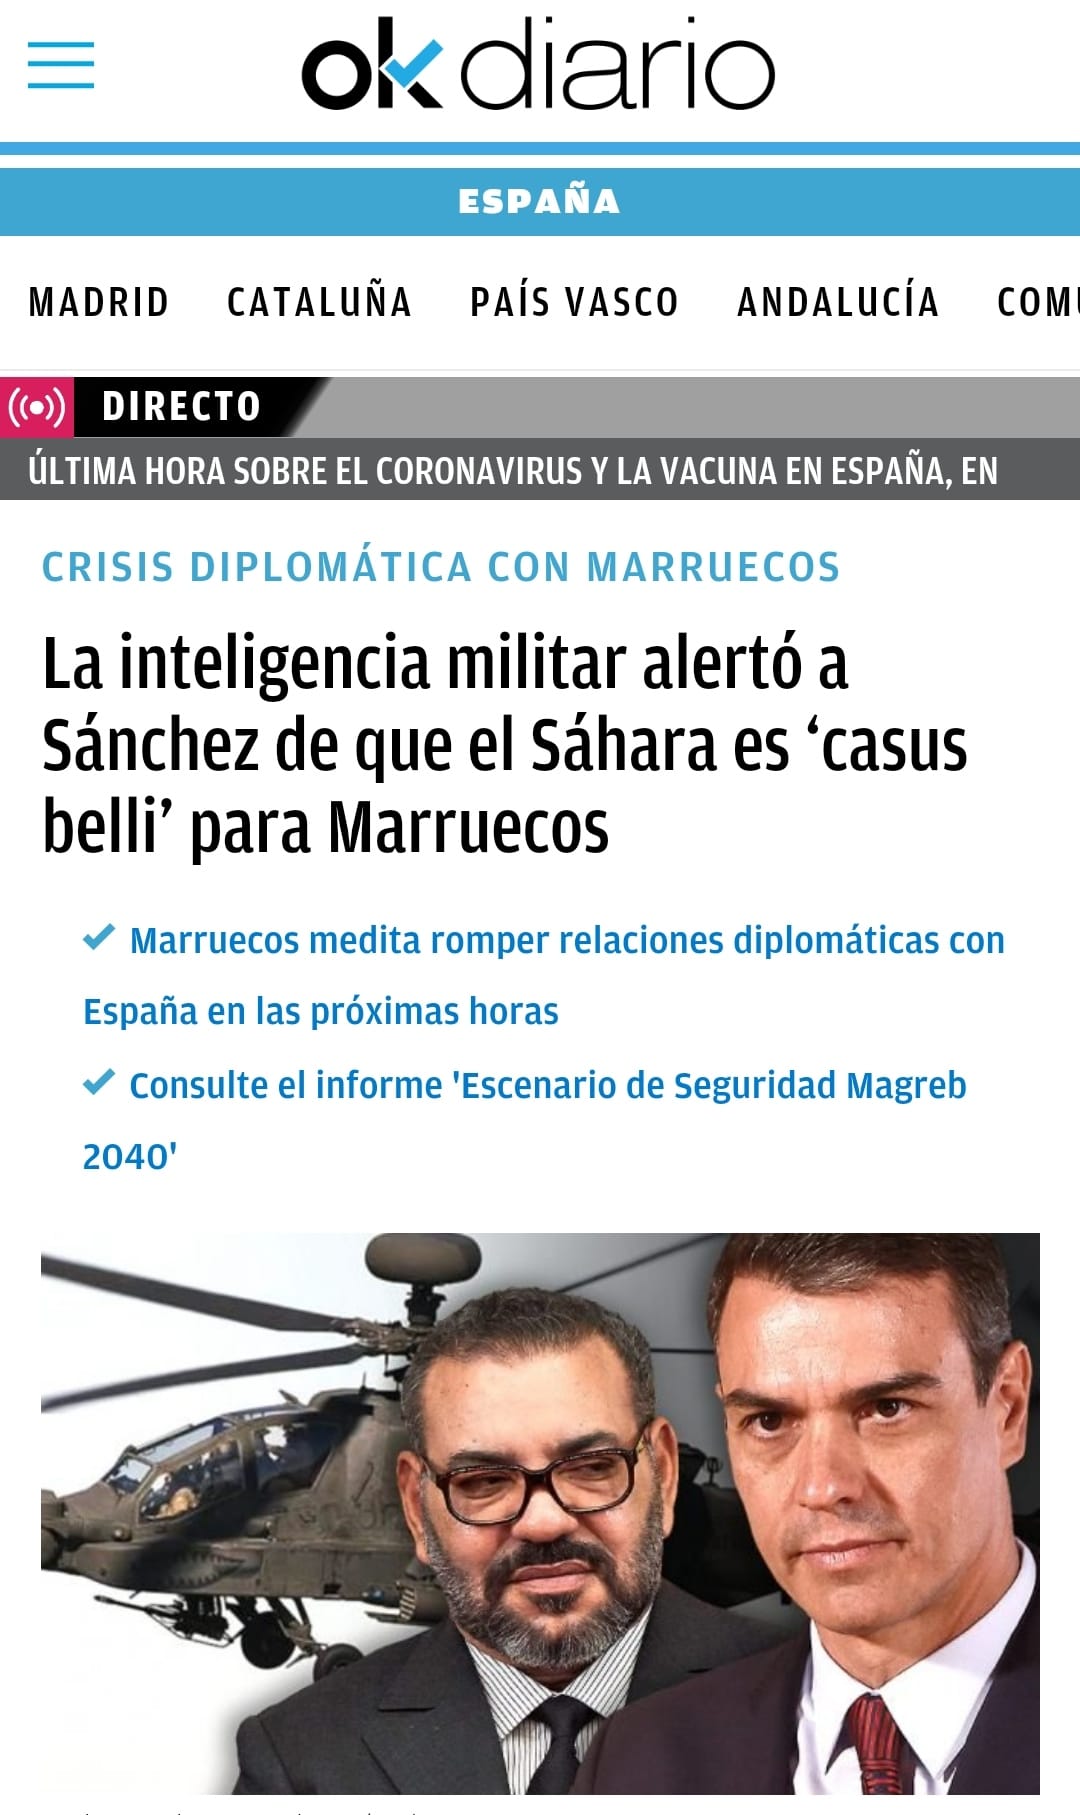 May be an image of 2 people and text that says 'okdiario ESPAÑA MADRID CATALUÑA PAÍS VASCO ANDALUCÍA COM DIRECTO ÚLTIMA HORA SOBRE EL CORONAVIRUS LA VACUNA EN ESPAÑA, EN CRISIS DIPLOMÁTICA CON MARRUECOS La inteligencia militar alertó a Sánchez de que el Sáhara es 'casus belli' para Marruecos Marruecos medita romper relaciones diplomáticas con España en las próximas horas 2040' Consulte el informe 'Escenario de Seguridad Magreb'